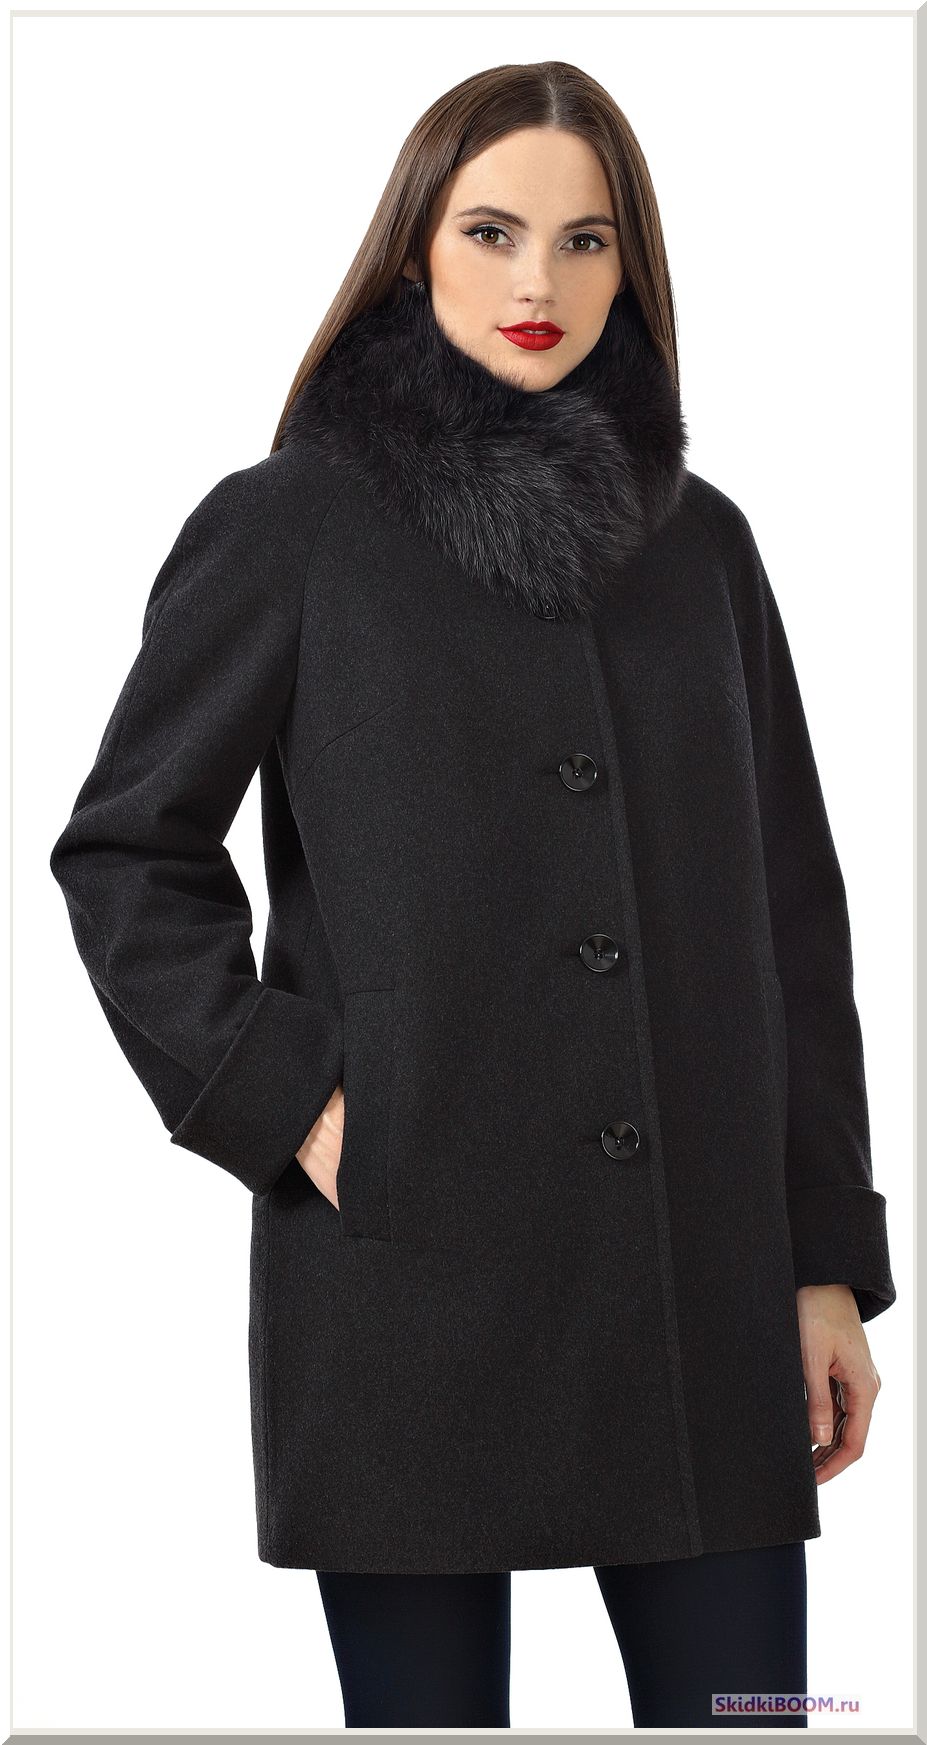 Как выбрать женское зимнее пальто - черное пальто